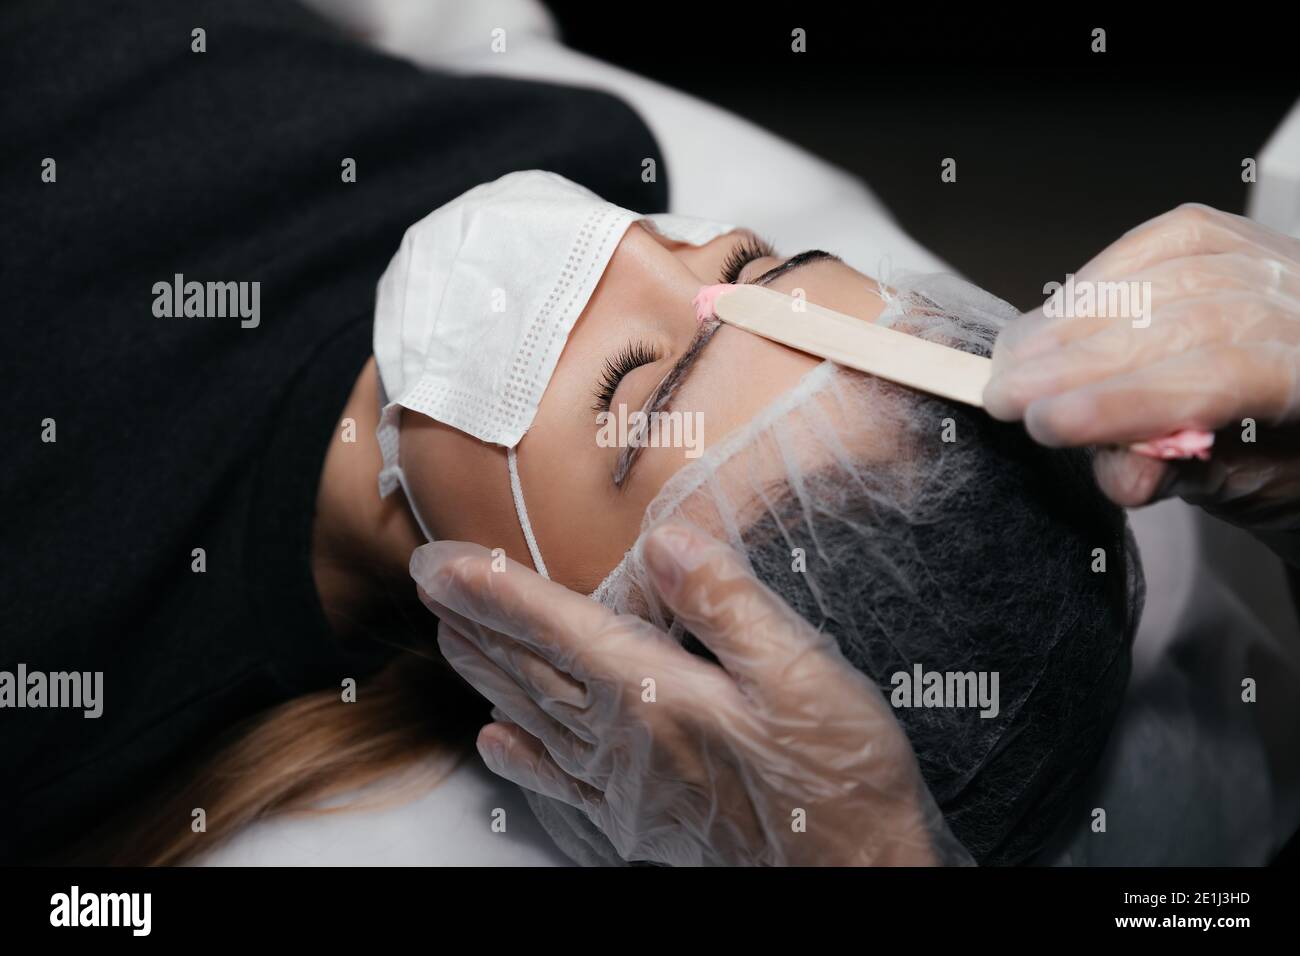 Procédure d'épilation du visage par cire chaude sur bâton de bois,  préparation avant tatouage de maquillage permanent sur les sourcils.  Procédure sans danger à l'aide de masques médicaux a Photo Stock -